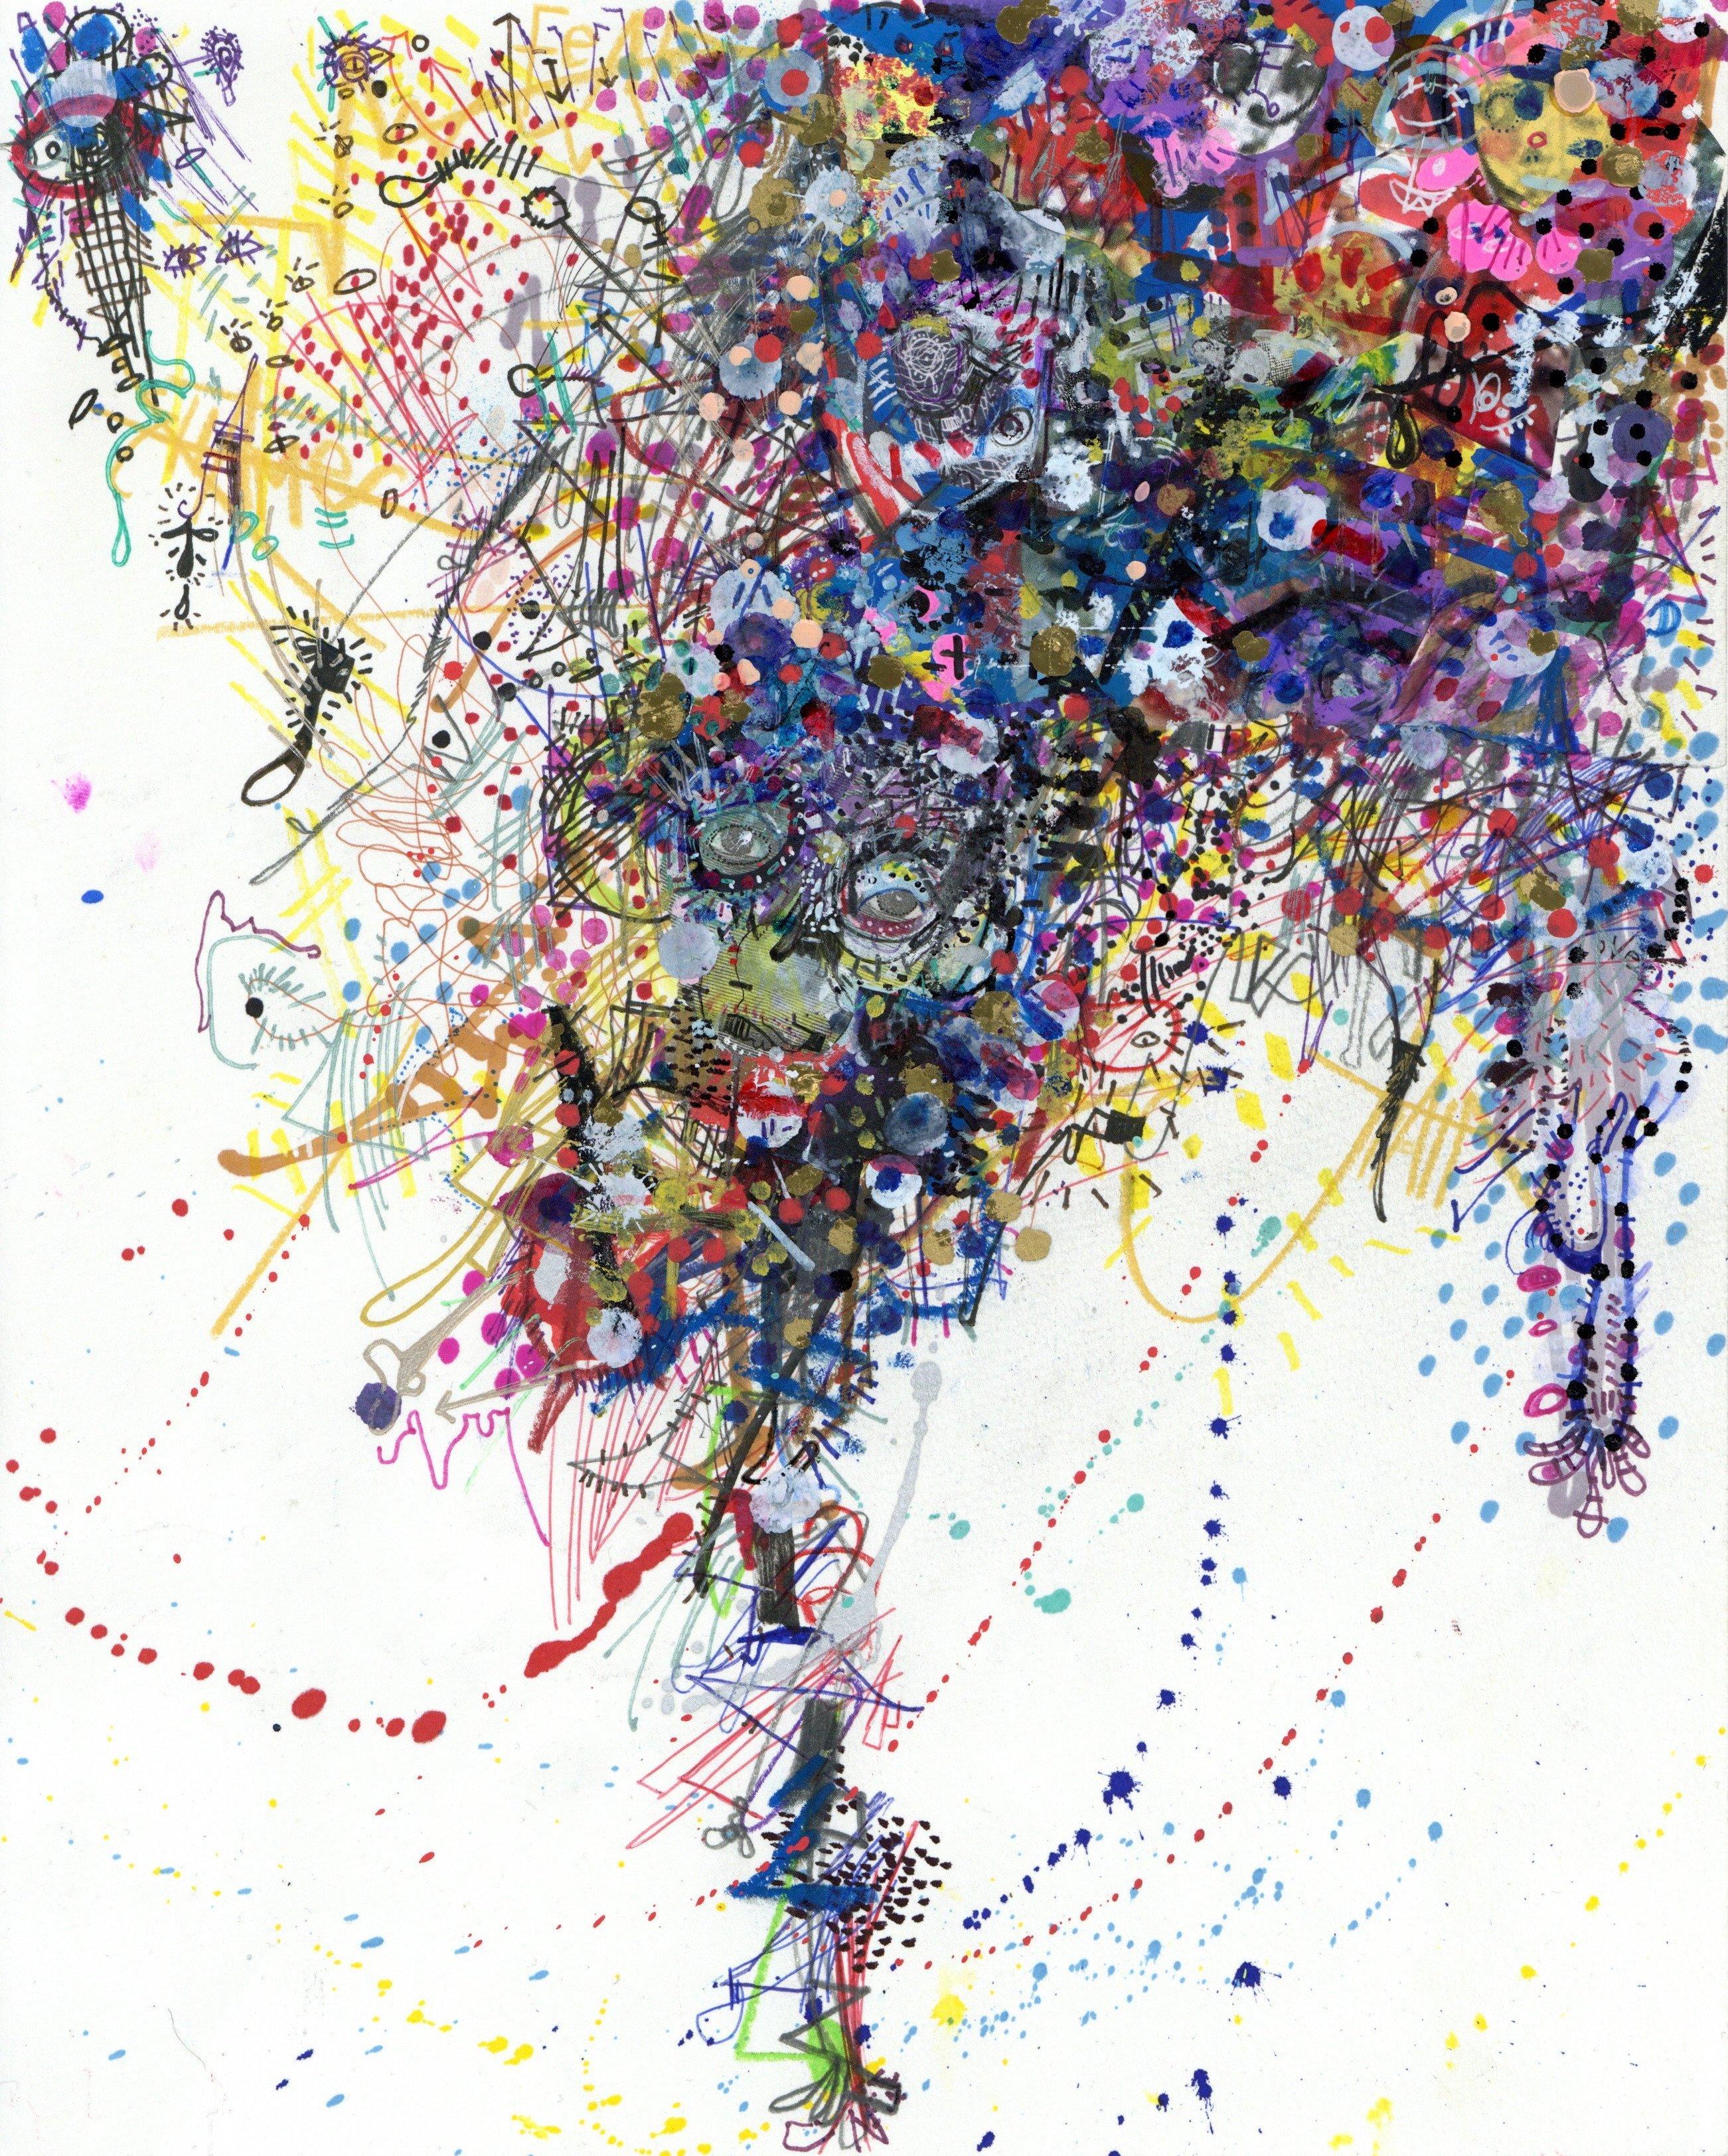 Marker, Gouache, Tinte, Metallicfarbe, Farbstift und Collage auf Papier

Michael Alan ist ein 1977 geborener amerikanischer Künstler, der in New York, USA, lebt und arbeitet. Als multidisziplinärer Künstler. Seine Arbeiten wurden in vielen